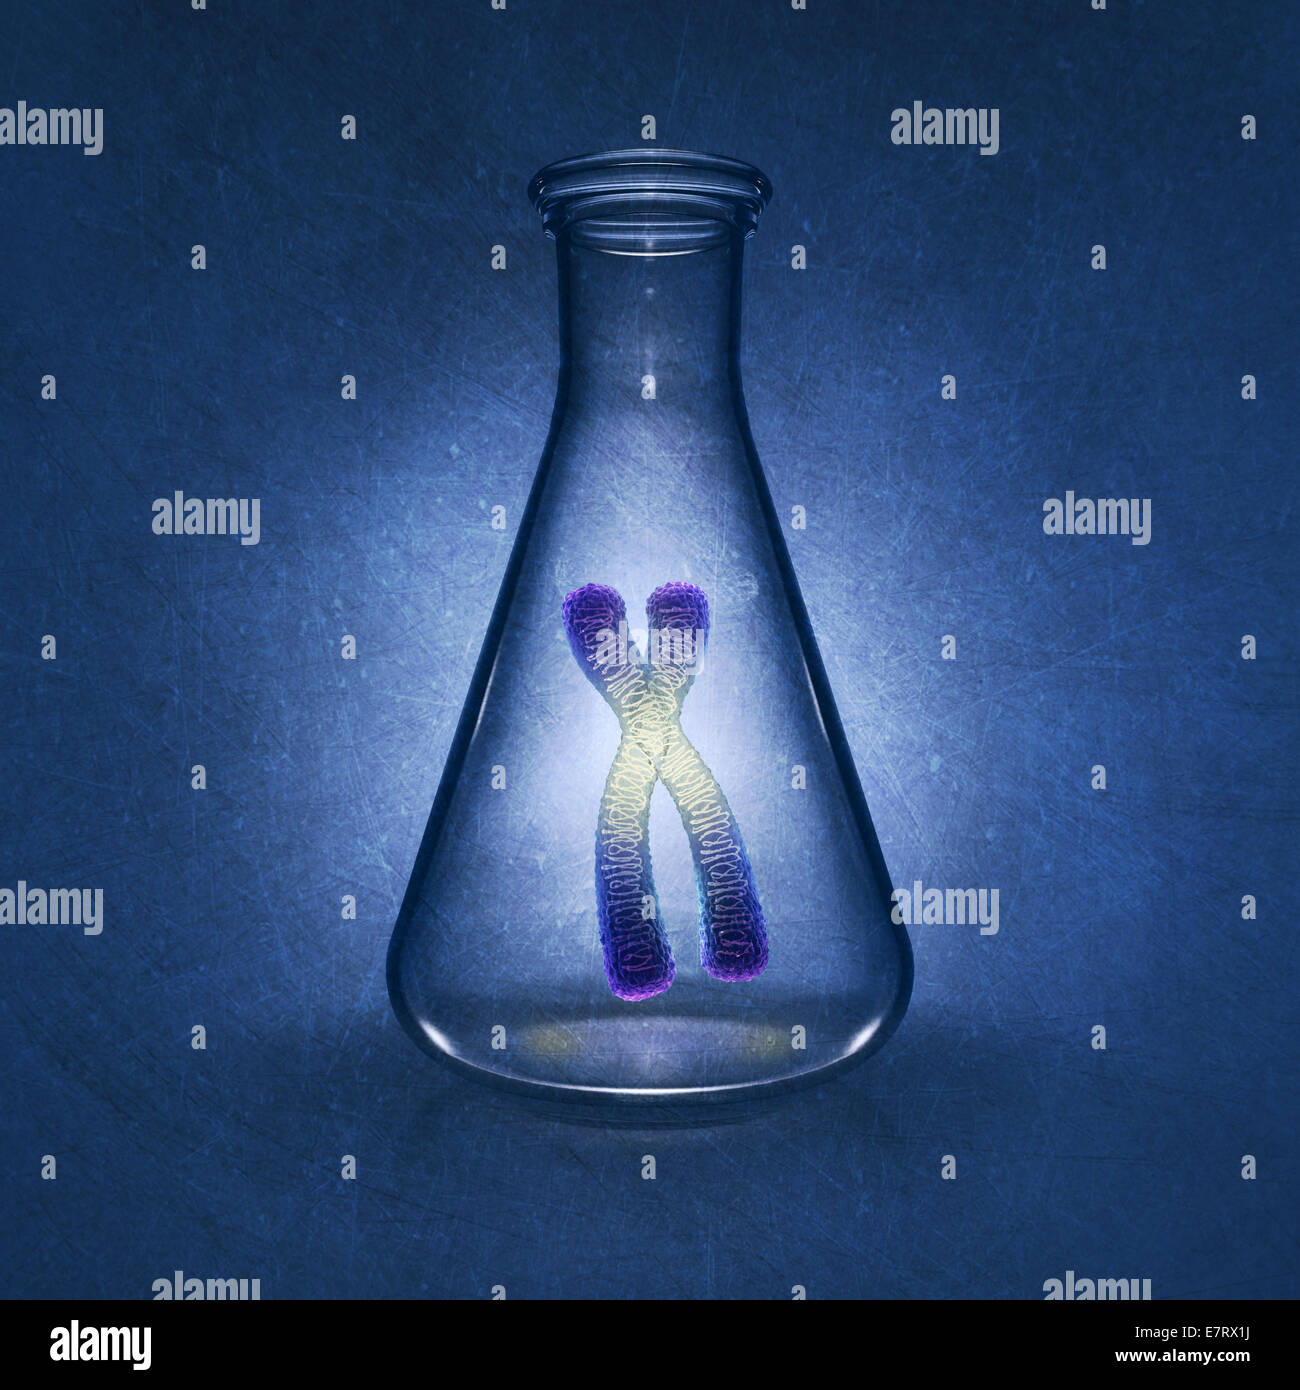 Cromosoma humano en frasco de laboratorio sobre fondo azul , ilustración detallada Foto de stock